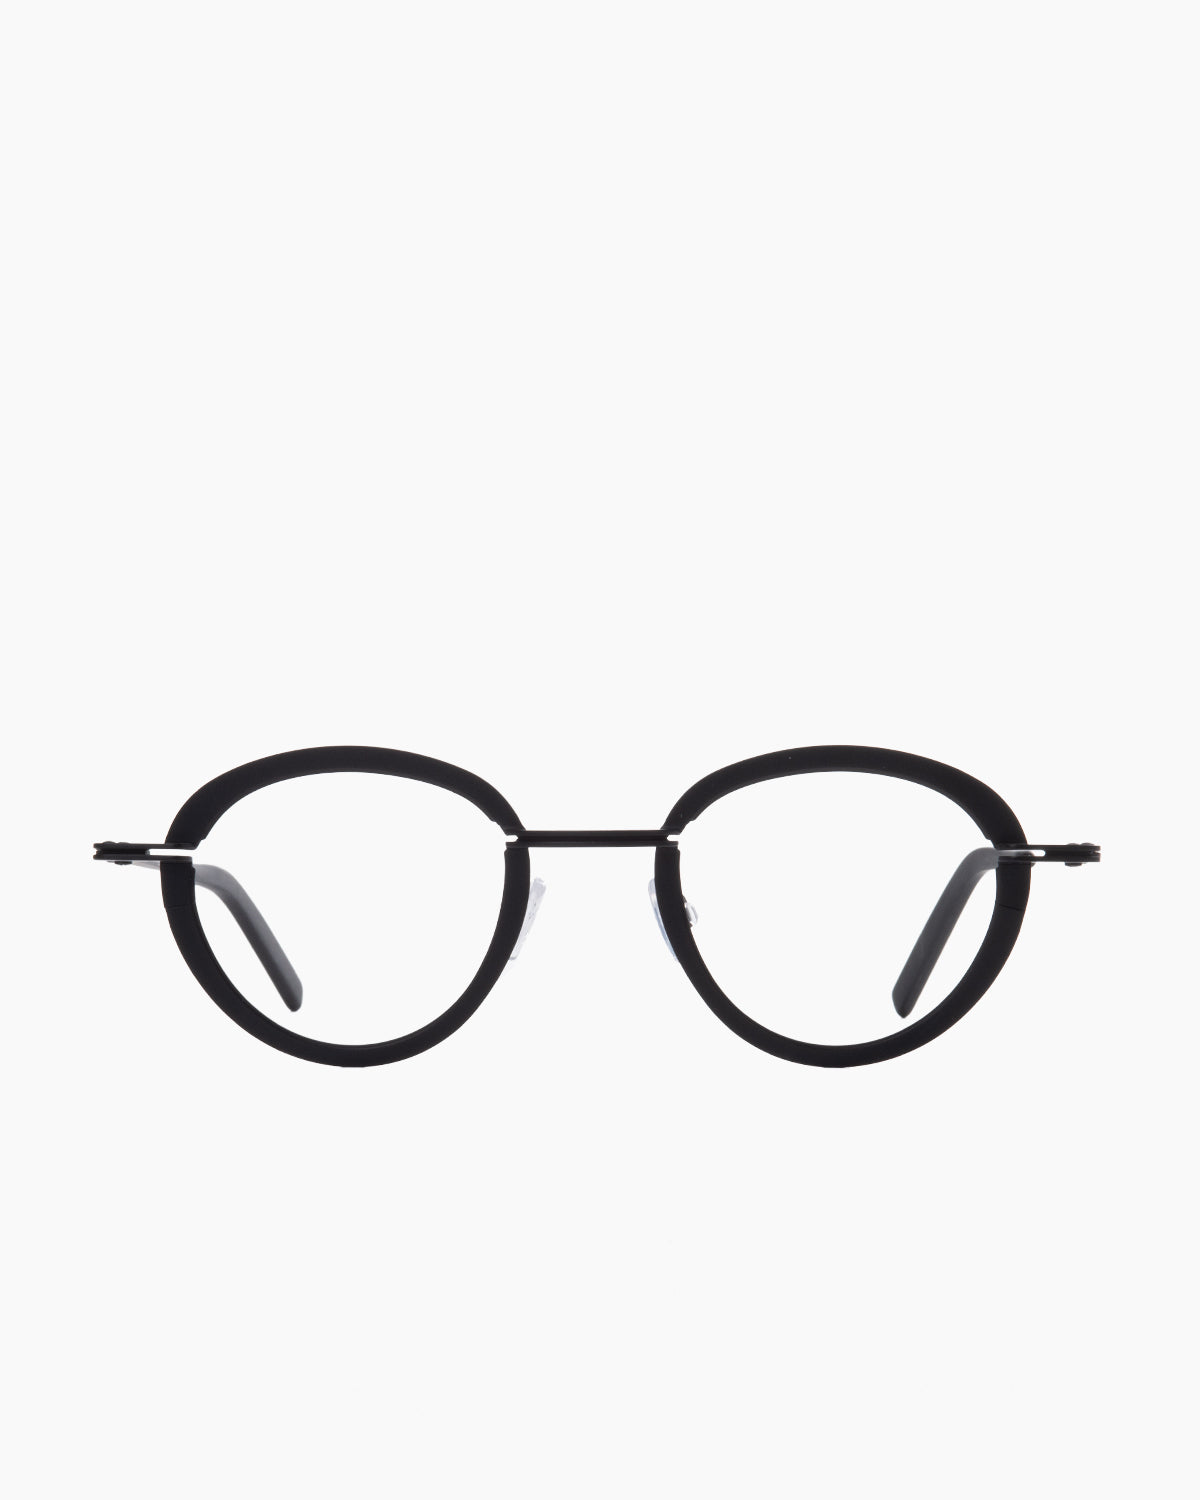 Theo - Sensational - 5 | Bar à lunettes:  Marie-Sophie Dion